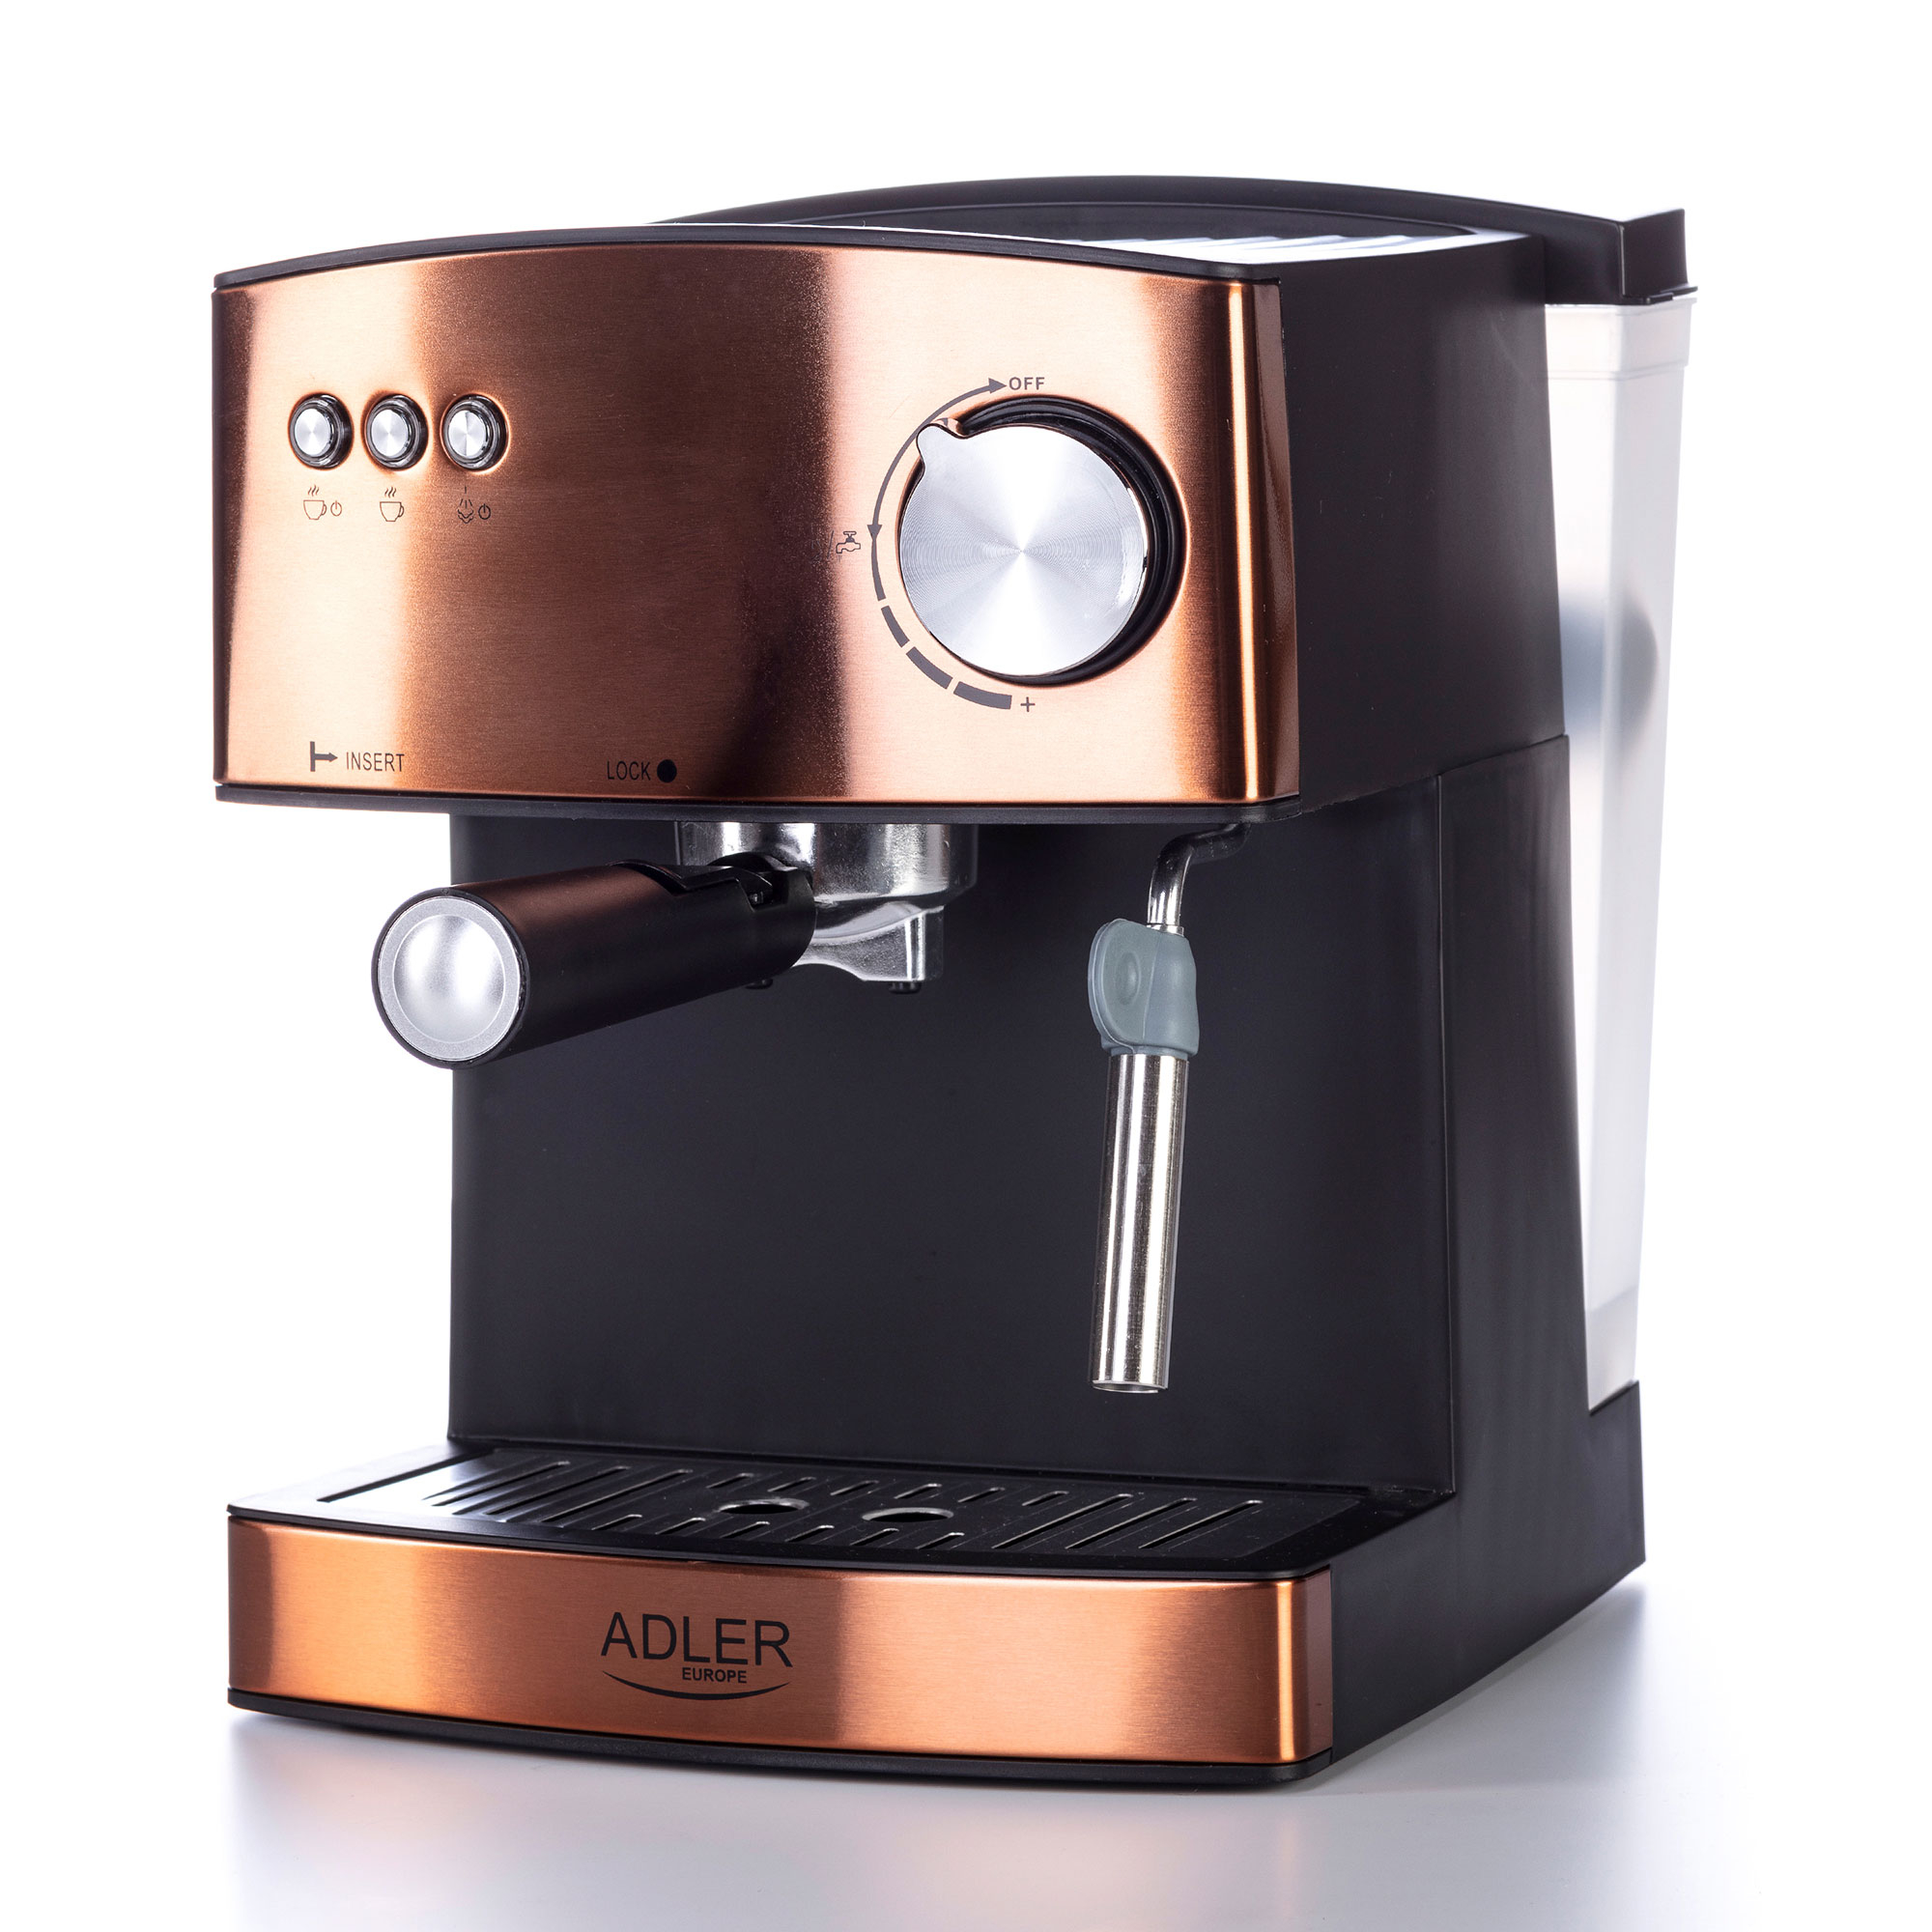 Adler AD 4404CR Cafetera Espresso Automática 15 Bares, Depósito 1,6 L, para Preparar Café Latte, Espresso y Capuccino, Vaporizador para Espumar Leche, Calienta Tazas, Color Cobre, 850W